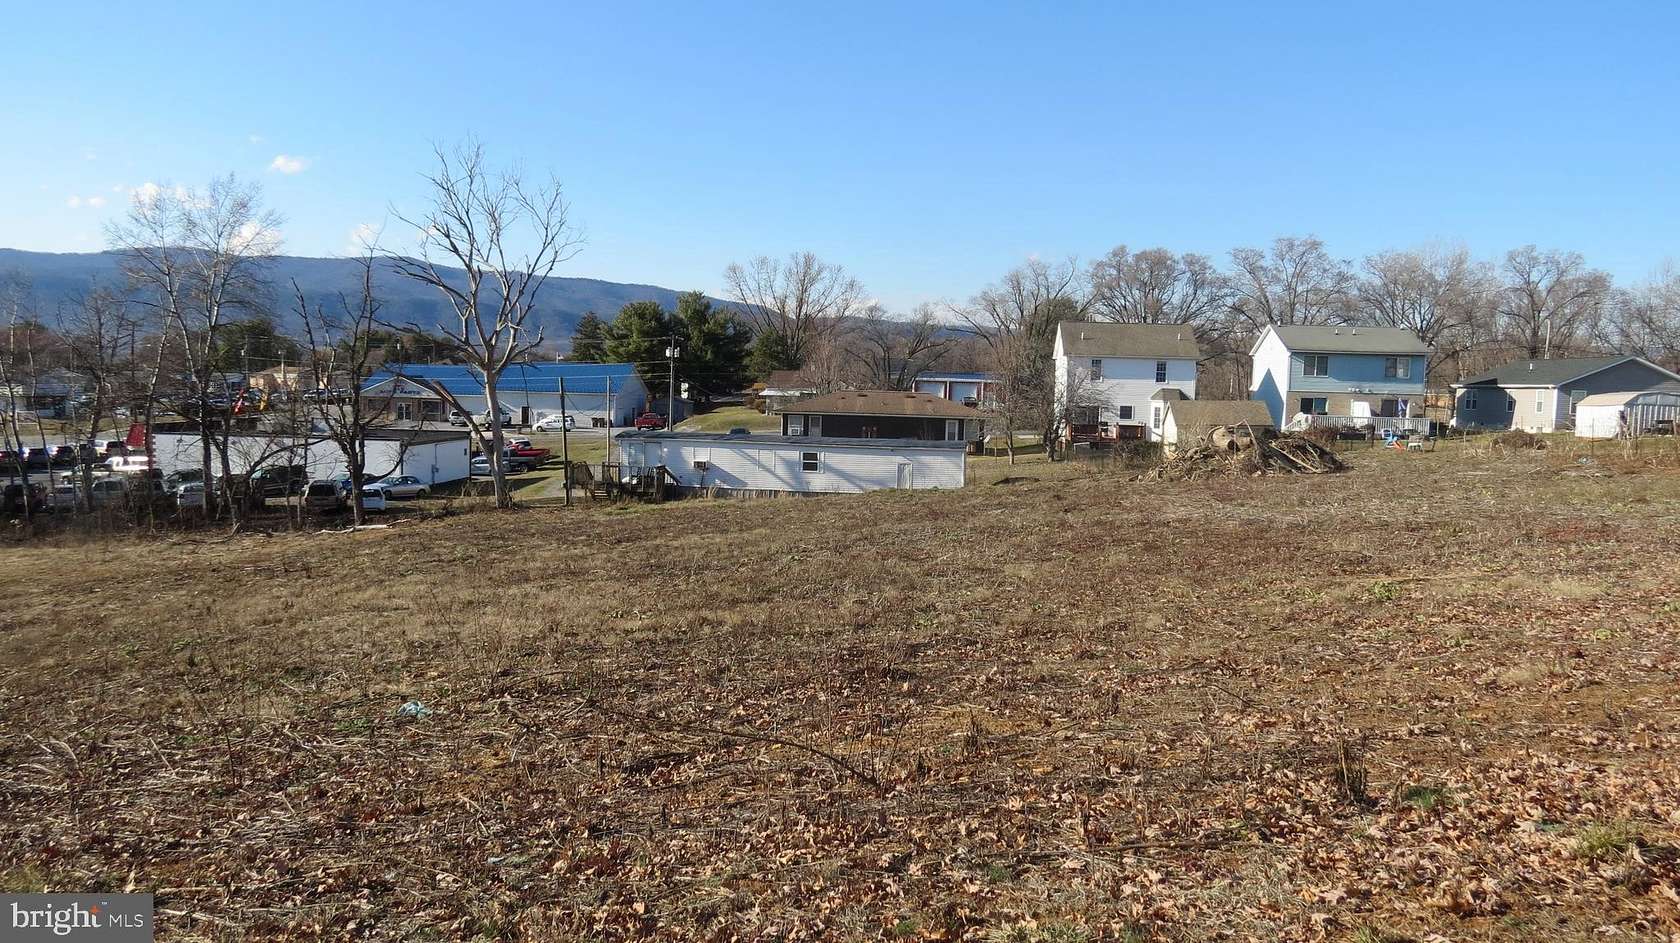 0.17 Acres of Land for Sale in Shenandoah, Virginia